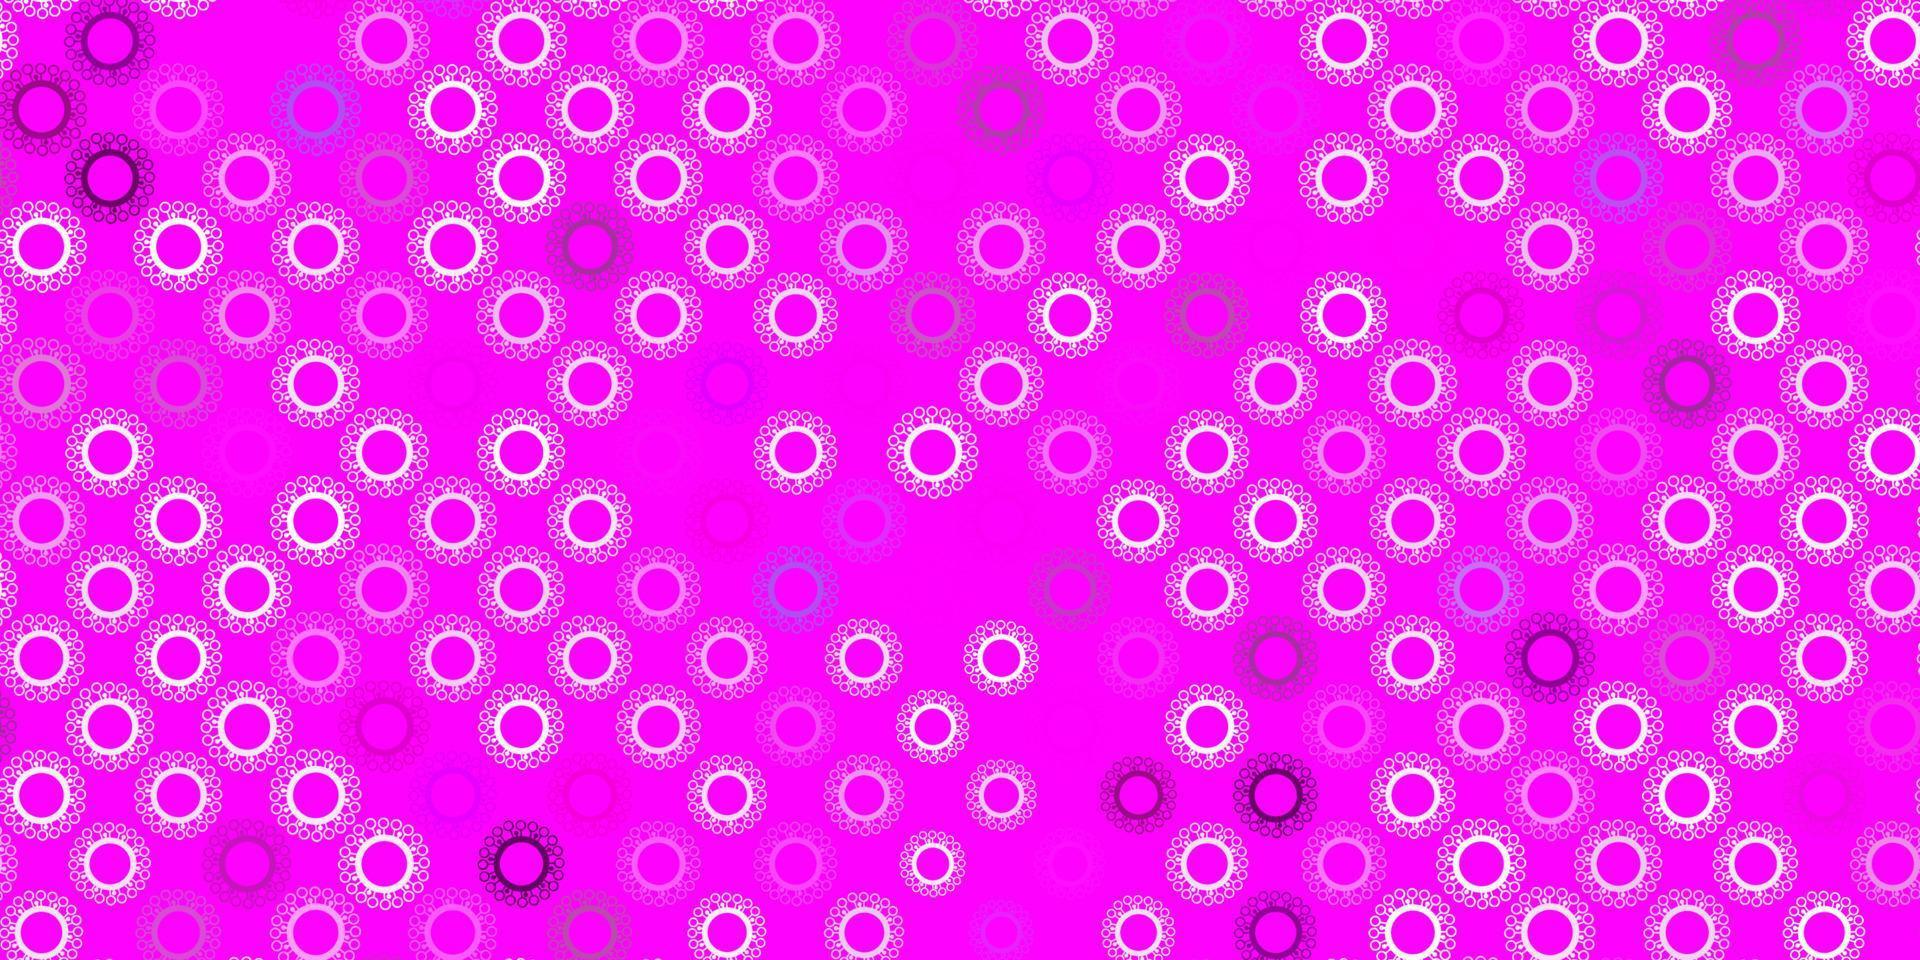 textura de vetor roxo, rosa claro com símbolos de doença.